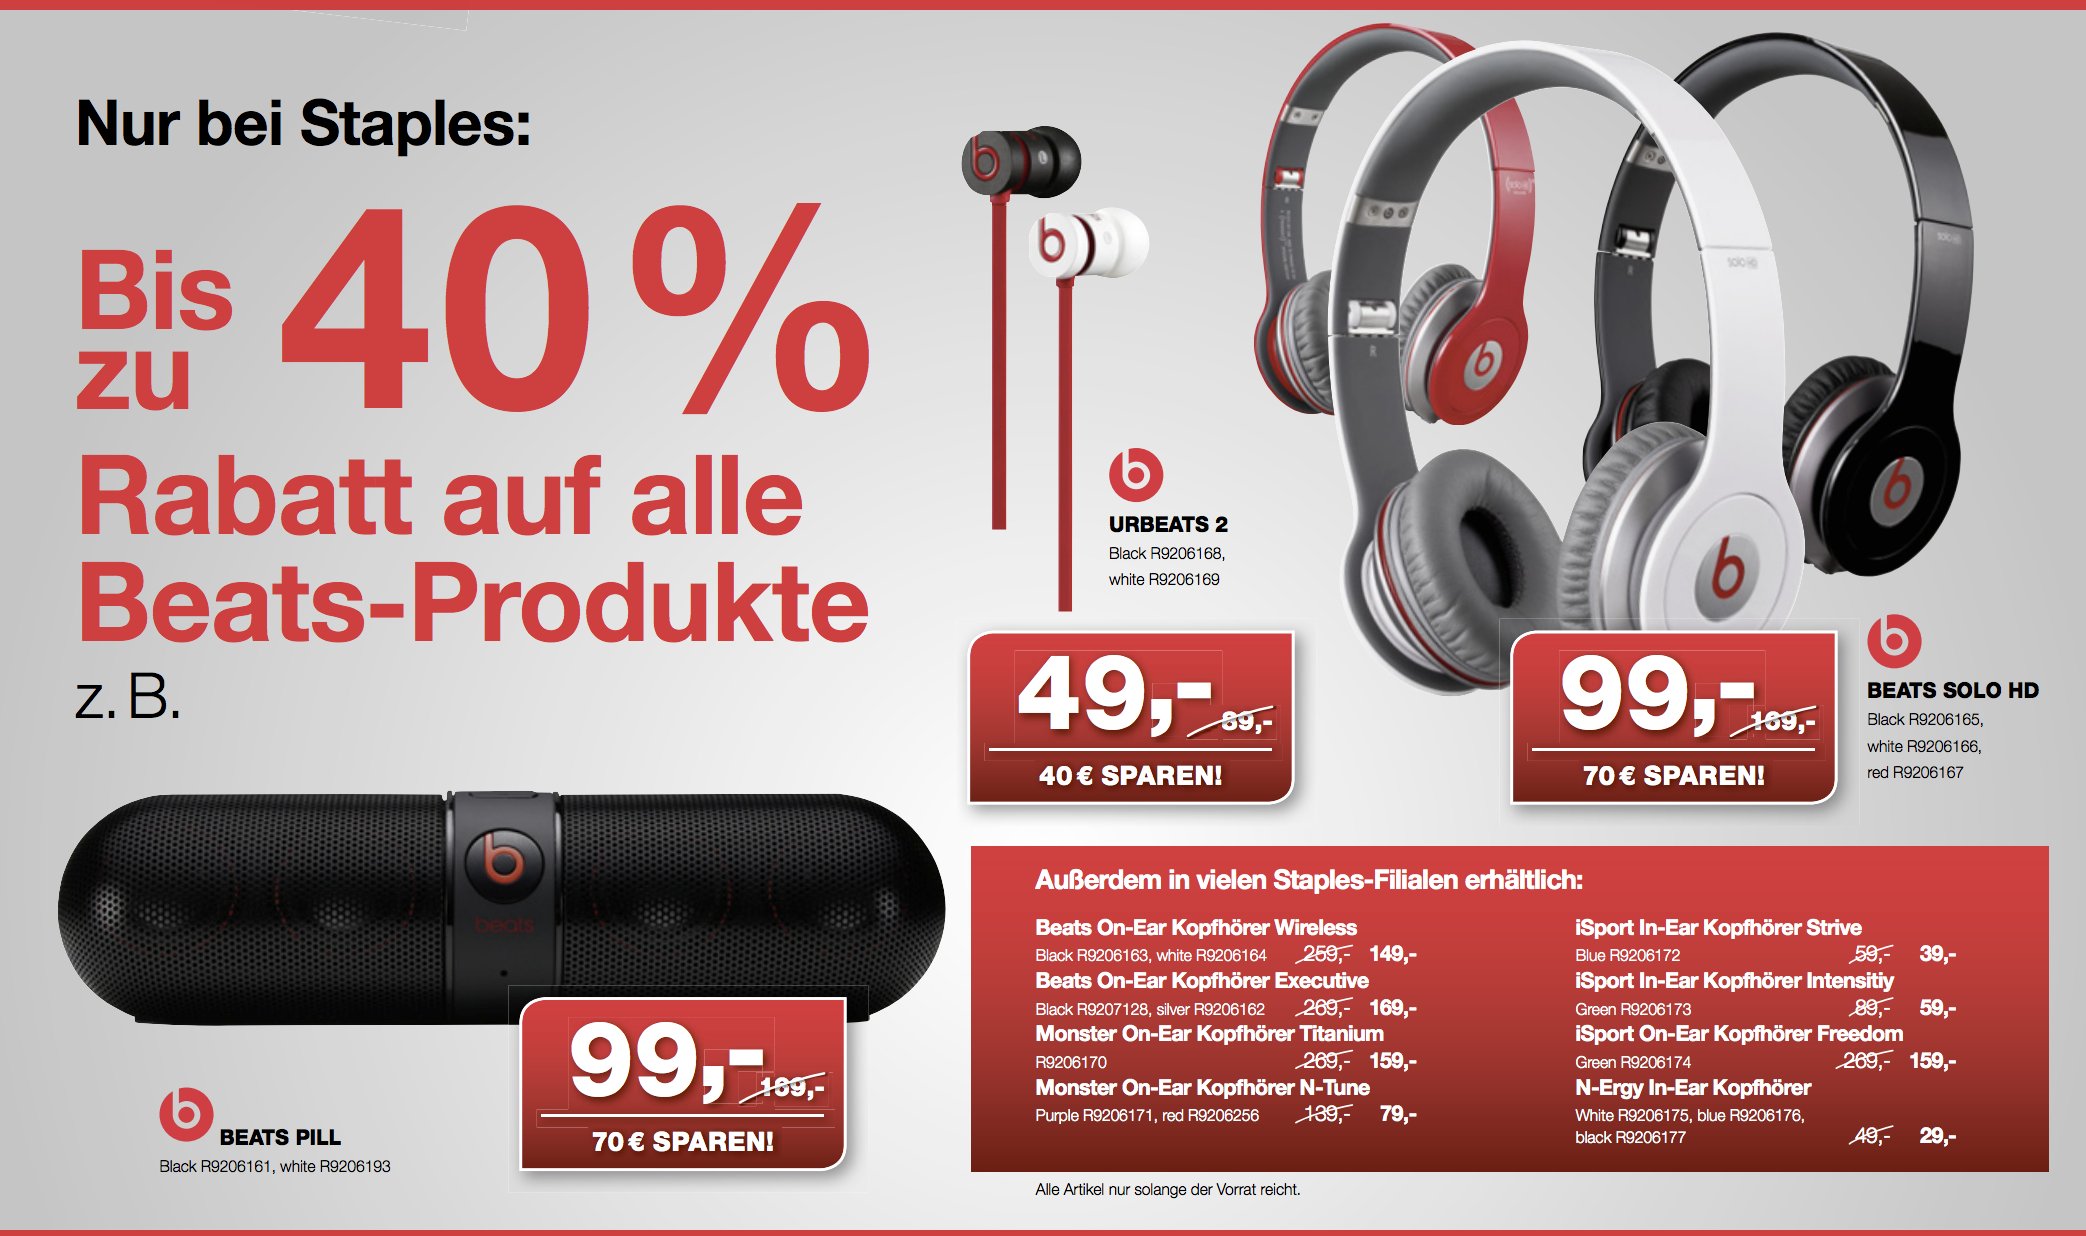 Beats bei Amazon ausverkauft - Staples mit 40 Prozent Rabatt auf alle Beats Produkte. 5